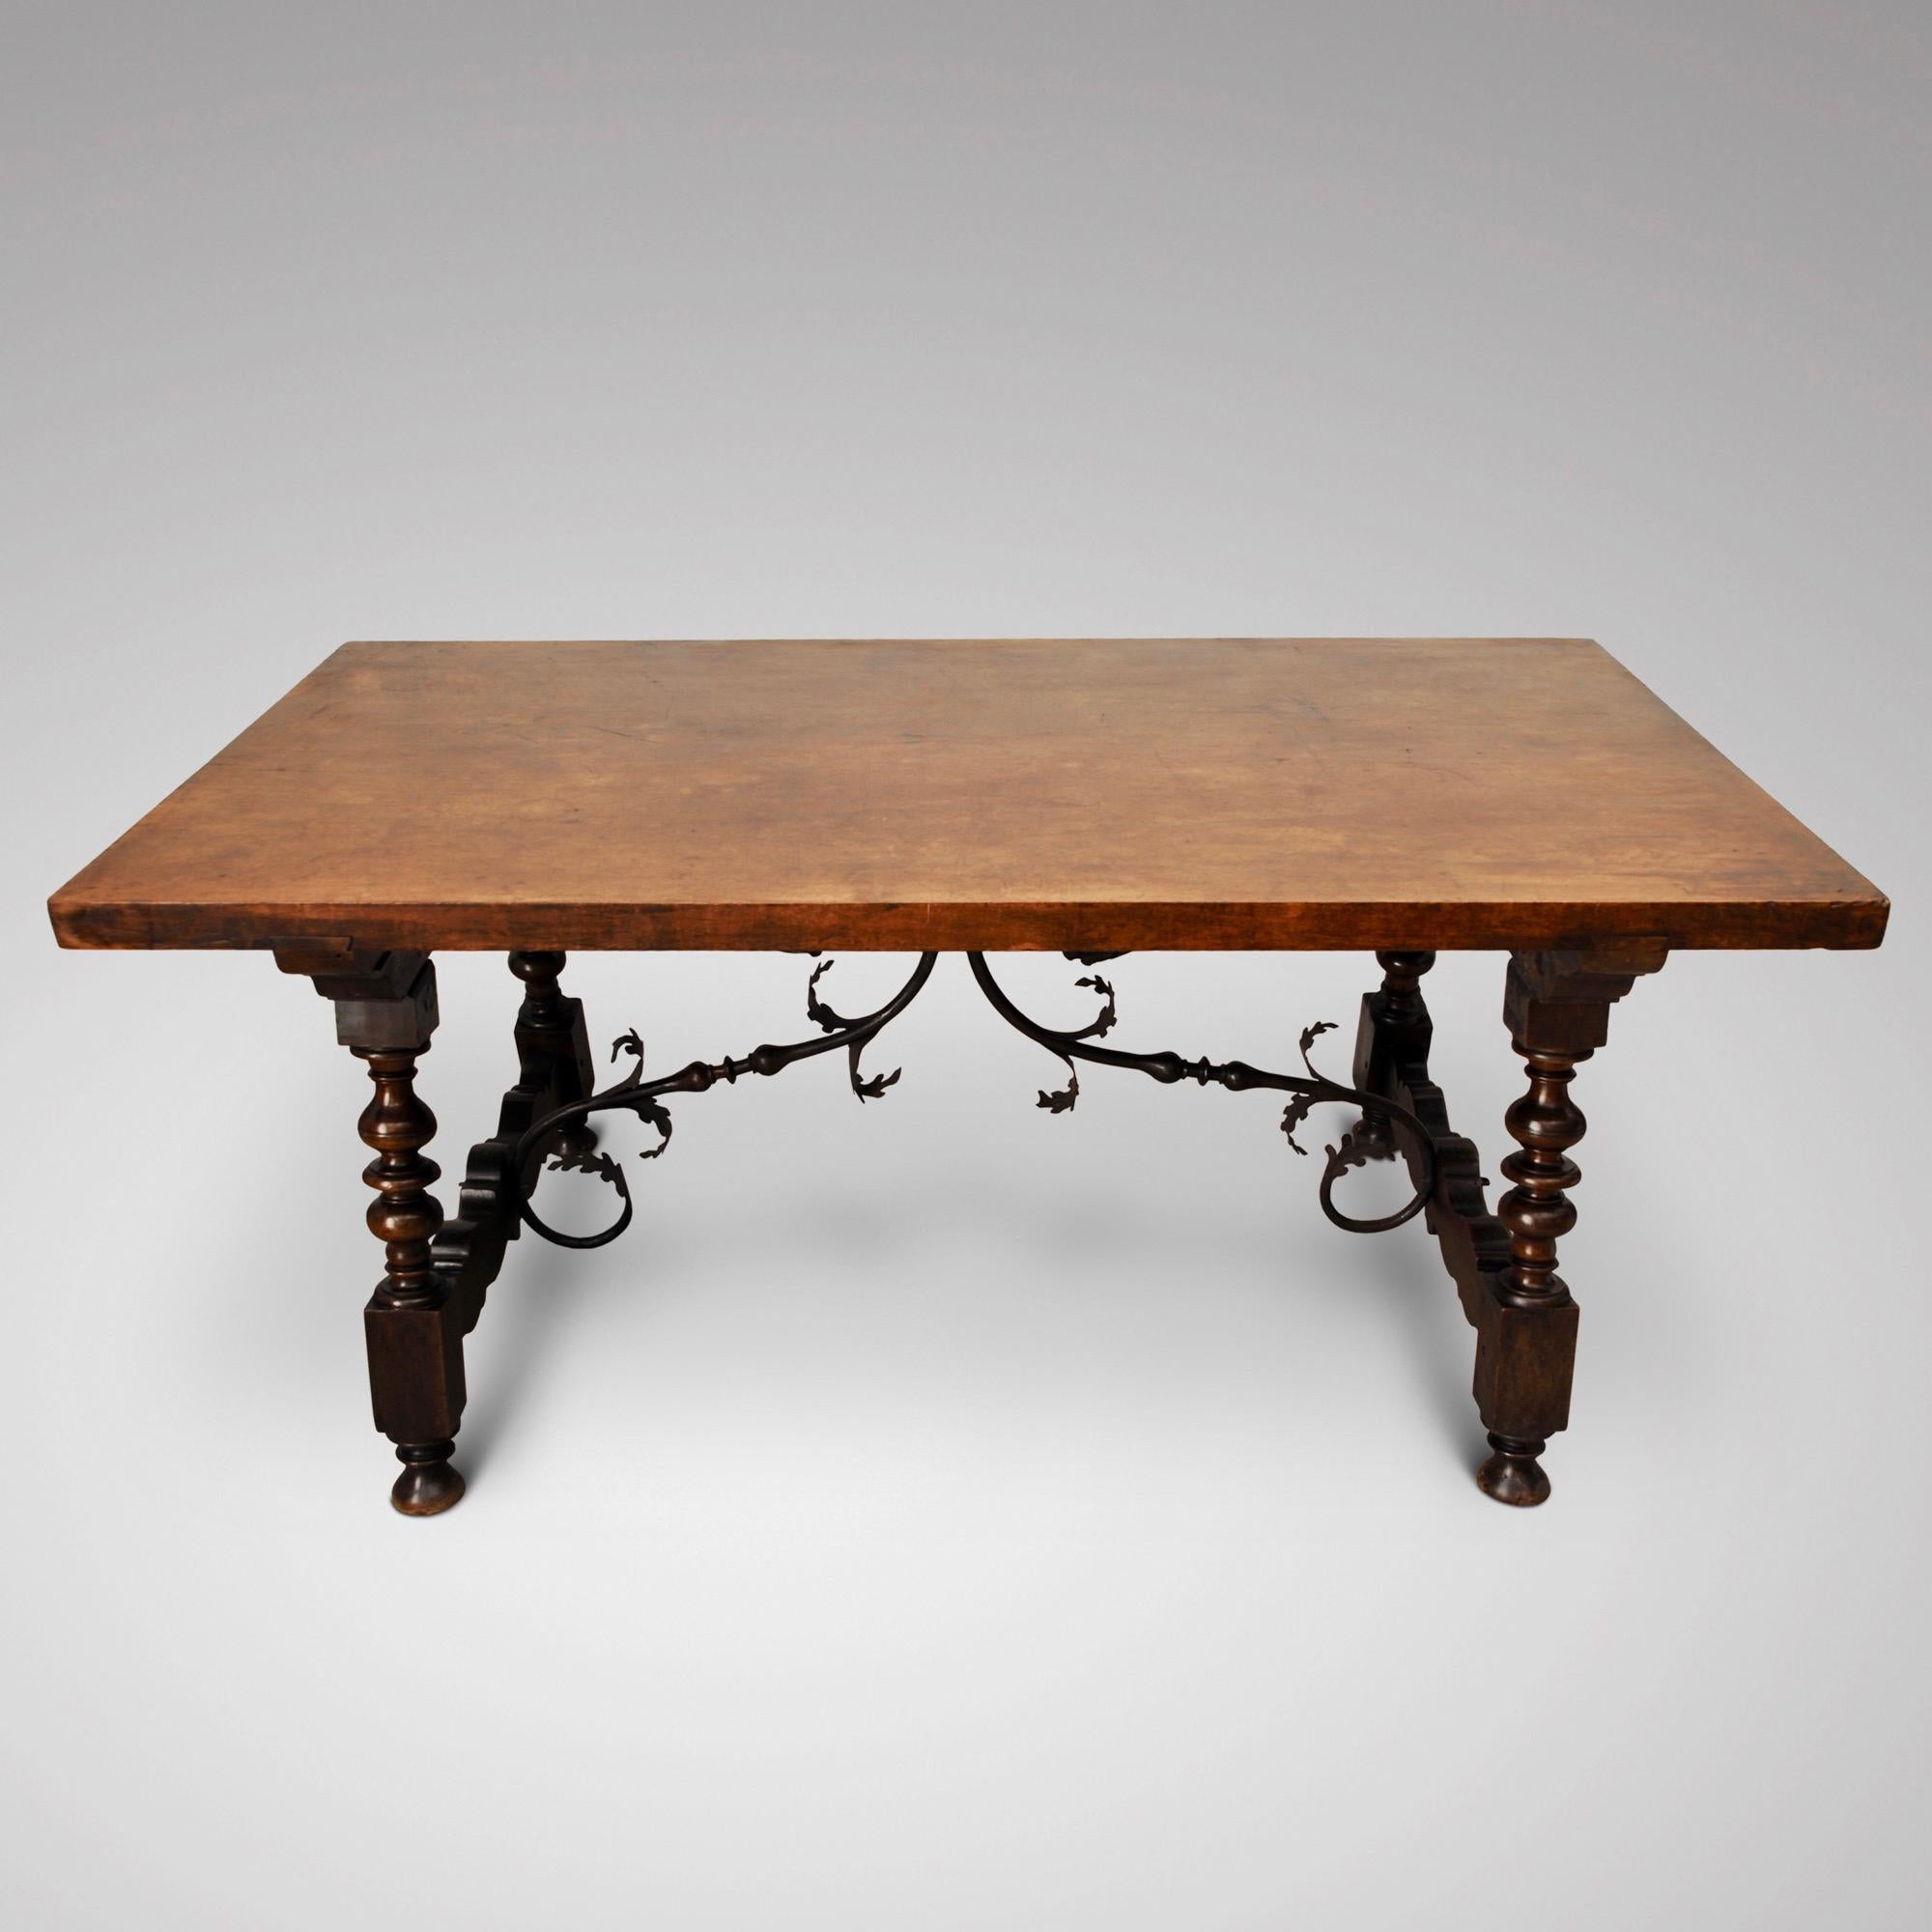 Ein wundervoller Tisch aus spanischem Nussbaum mit einer dicken Platte von hervorragender Farbe. Der Tisch hat noch die fantastische Original-Metallarbeit und kann sowohl als Beistelltisch als auch als Mitteltisch verwendet werden.